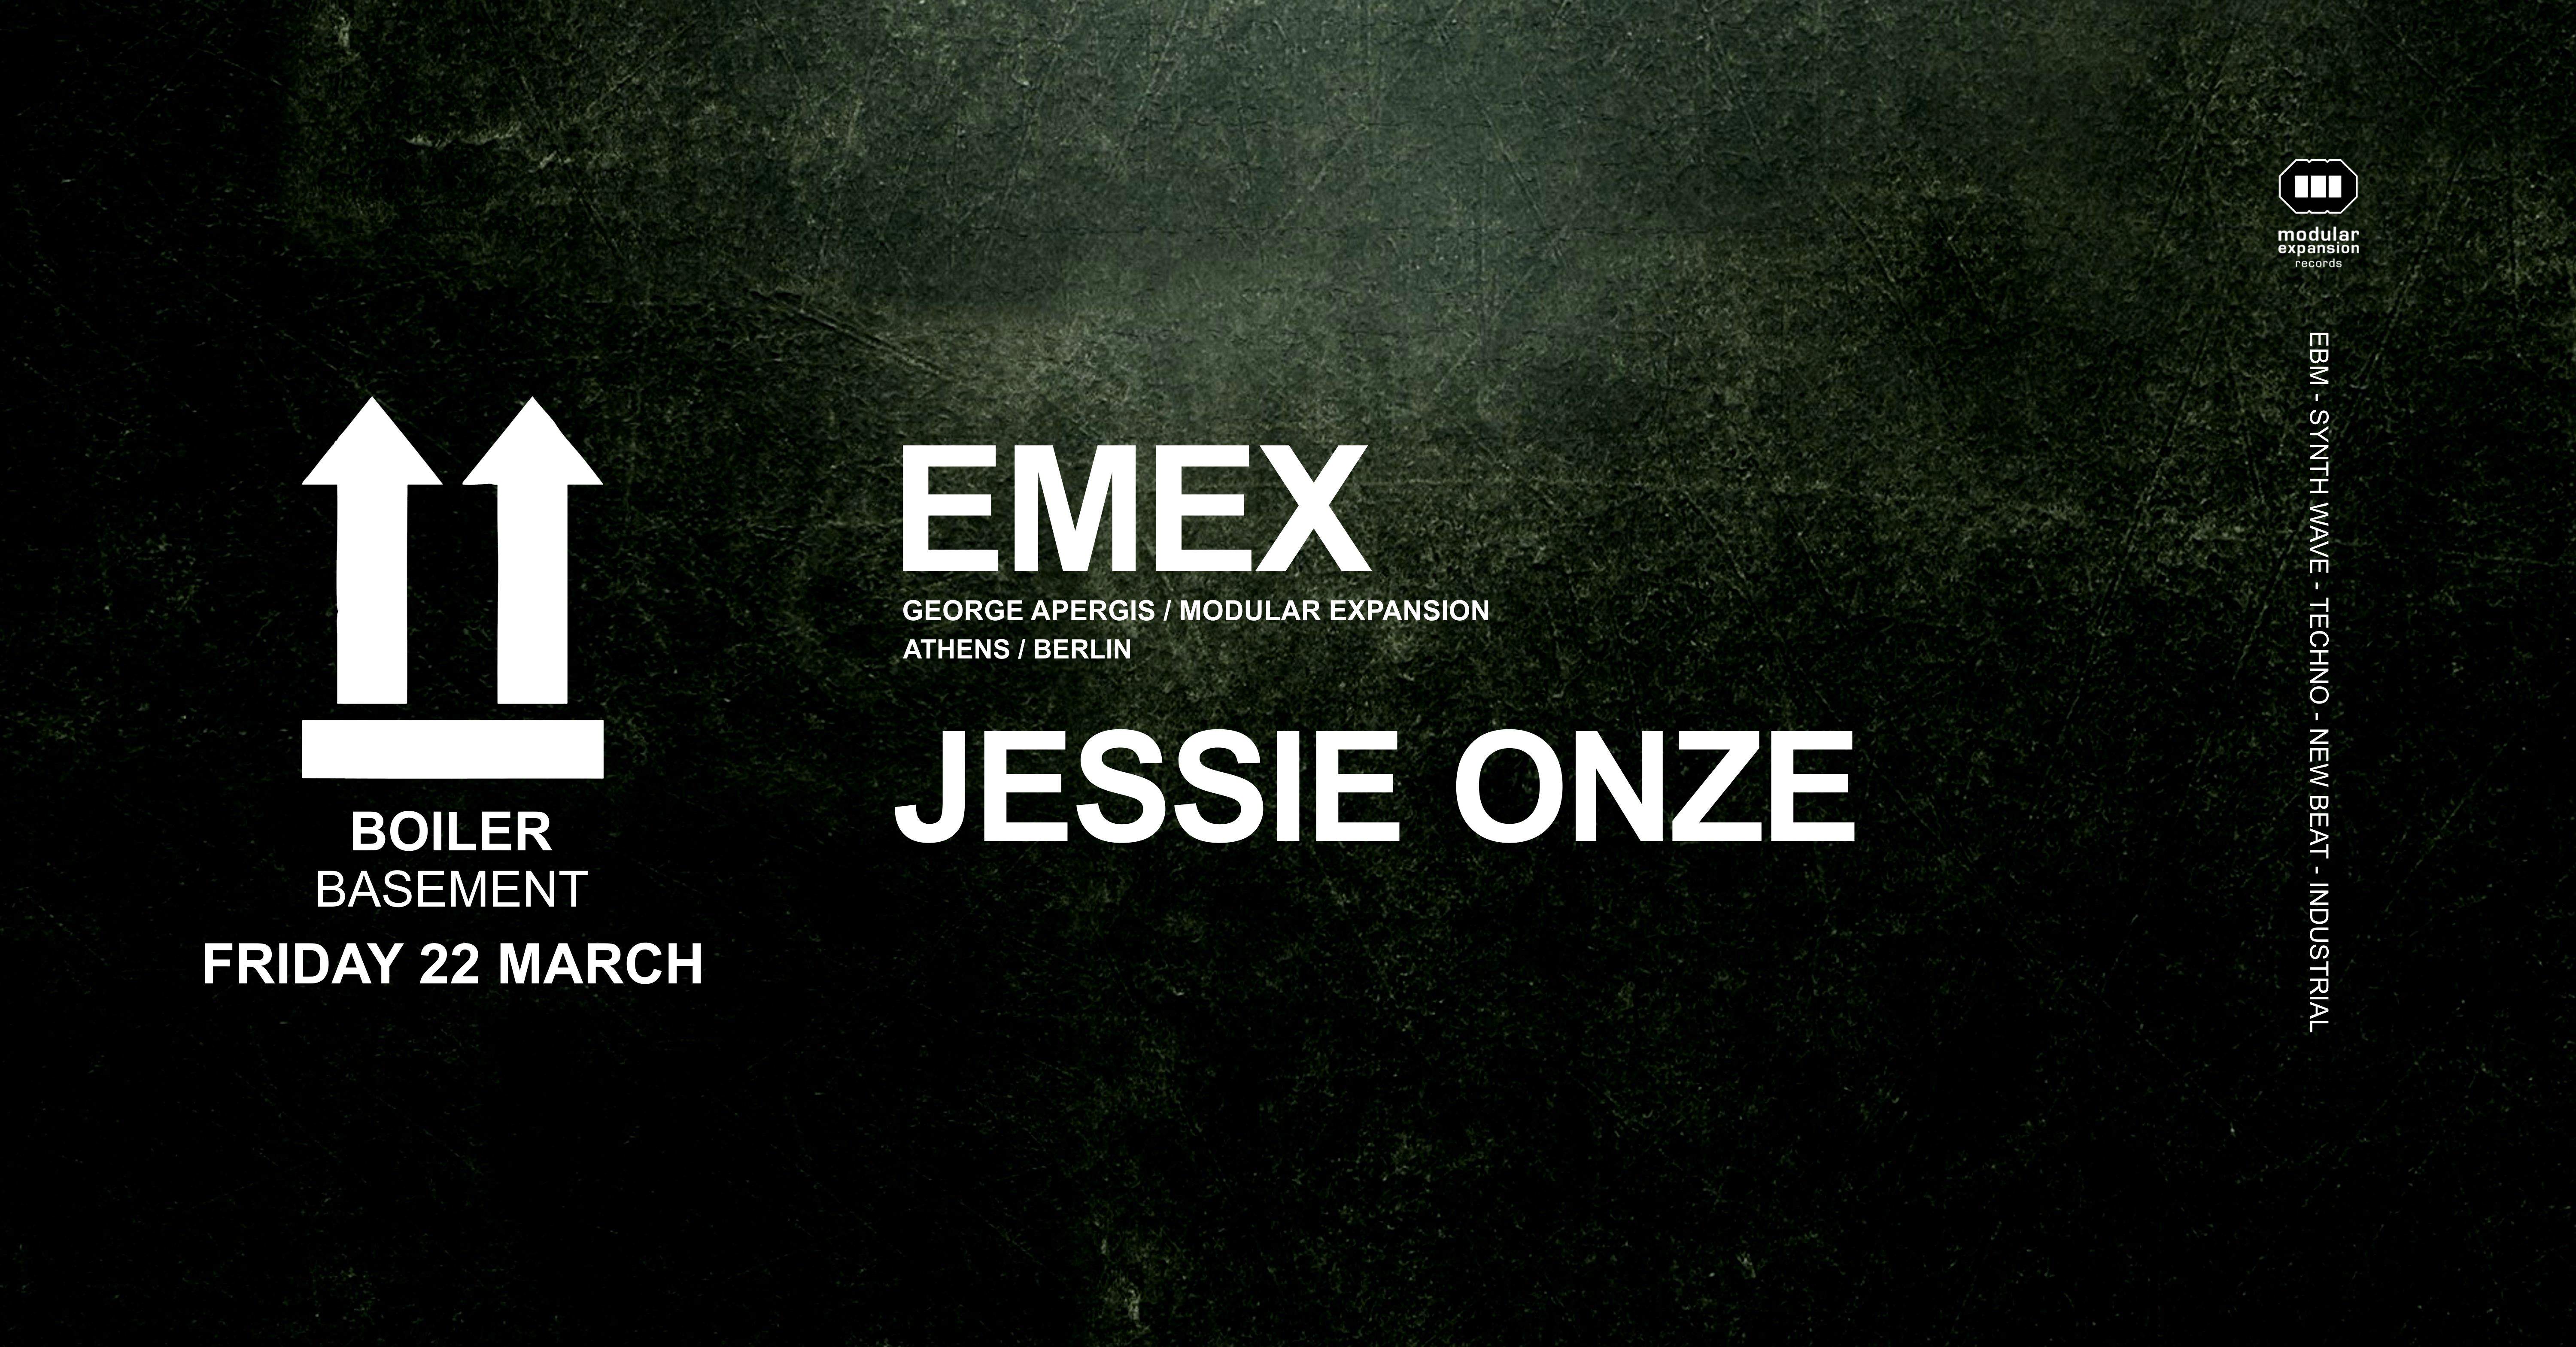 Emex & Jessie Onze - フライヤー表